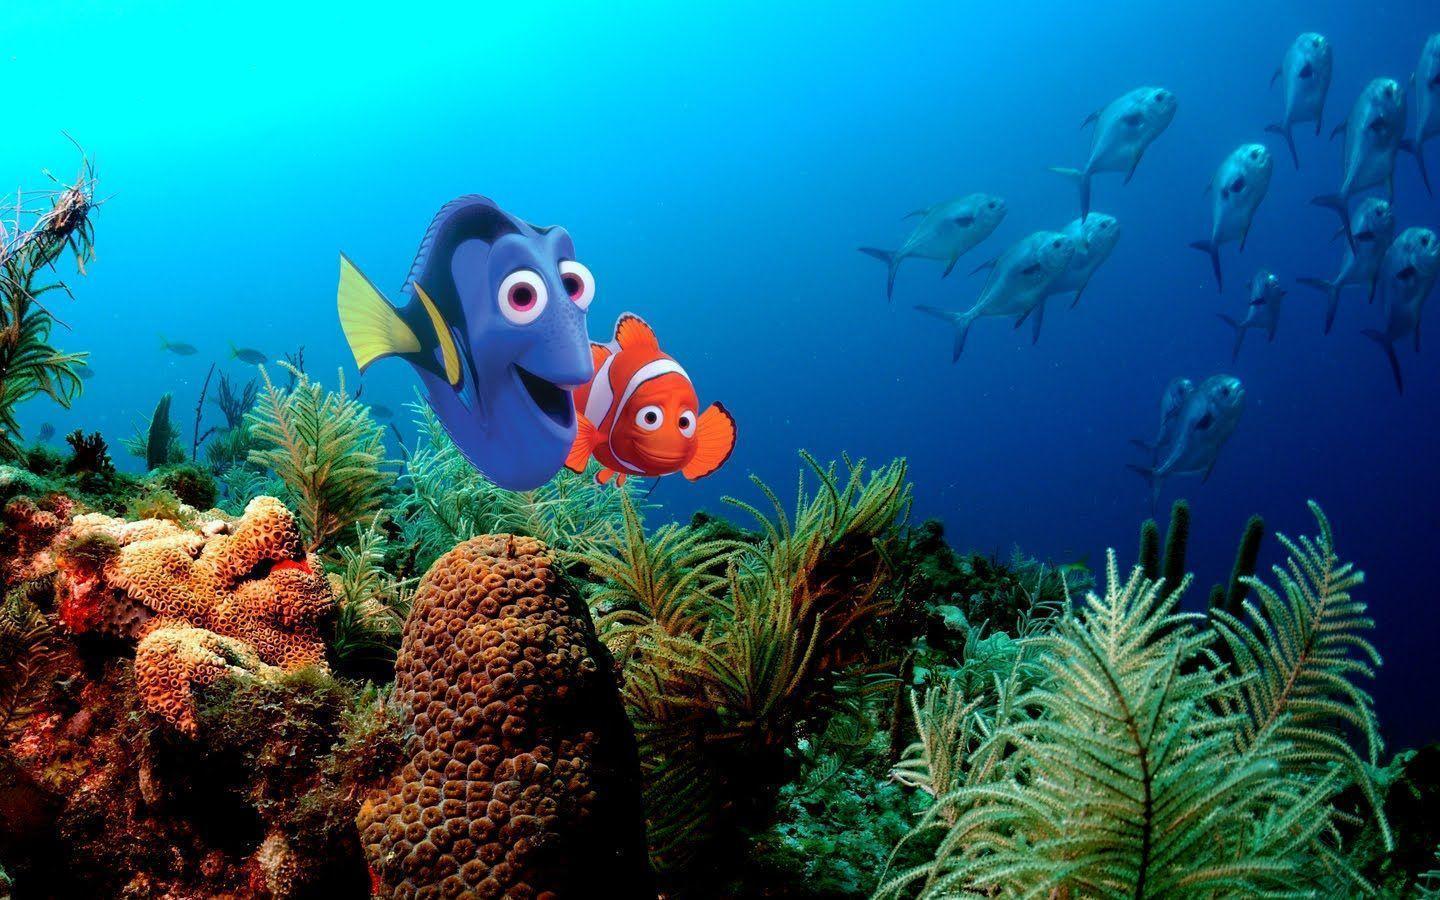 Buscando a Nemo, Finding Nemo